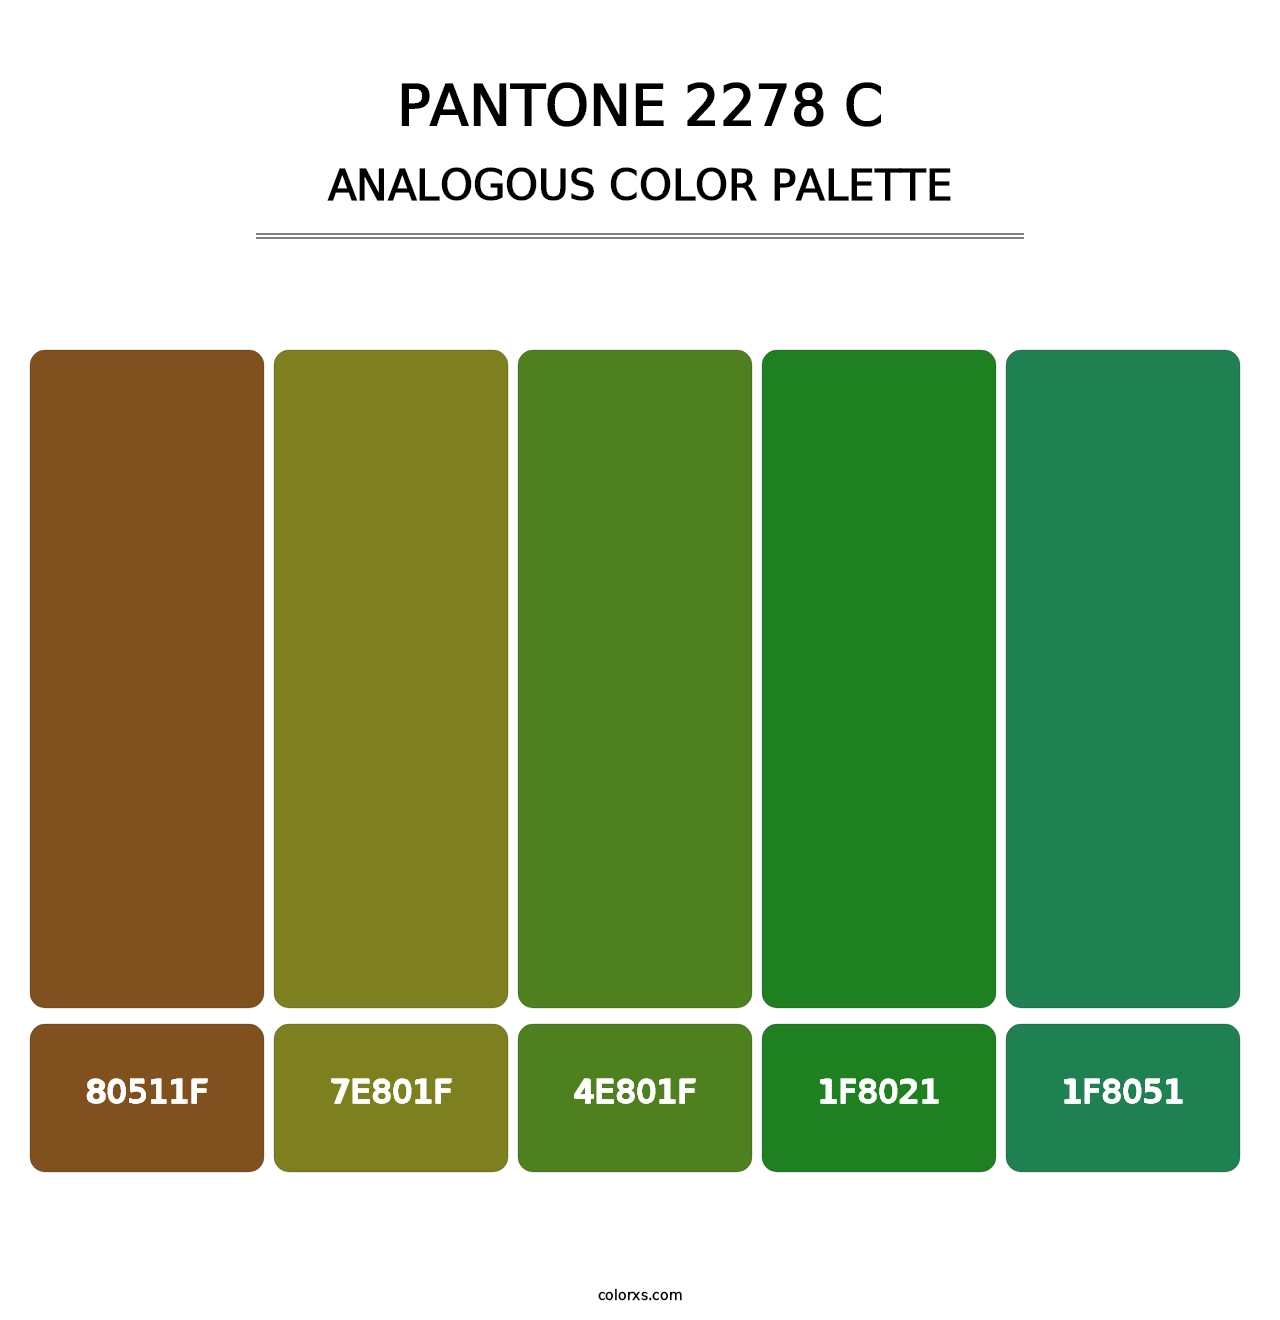 PANTONE 2278 C - Analogous Color Palette